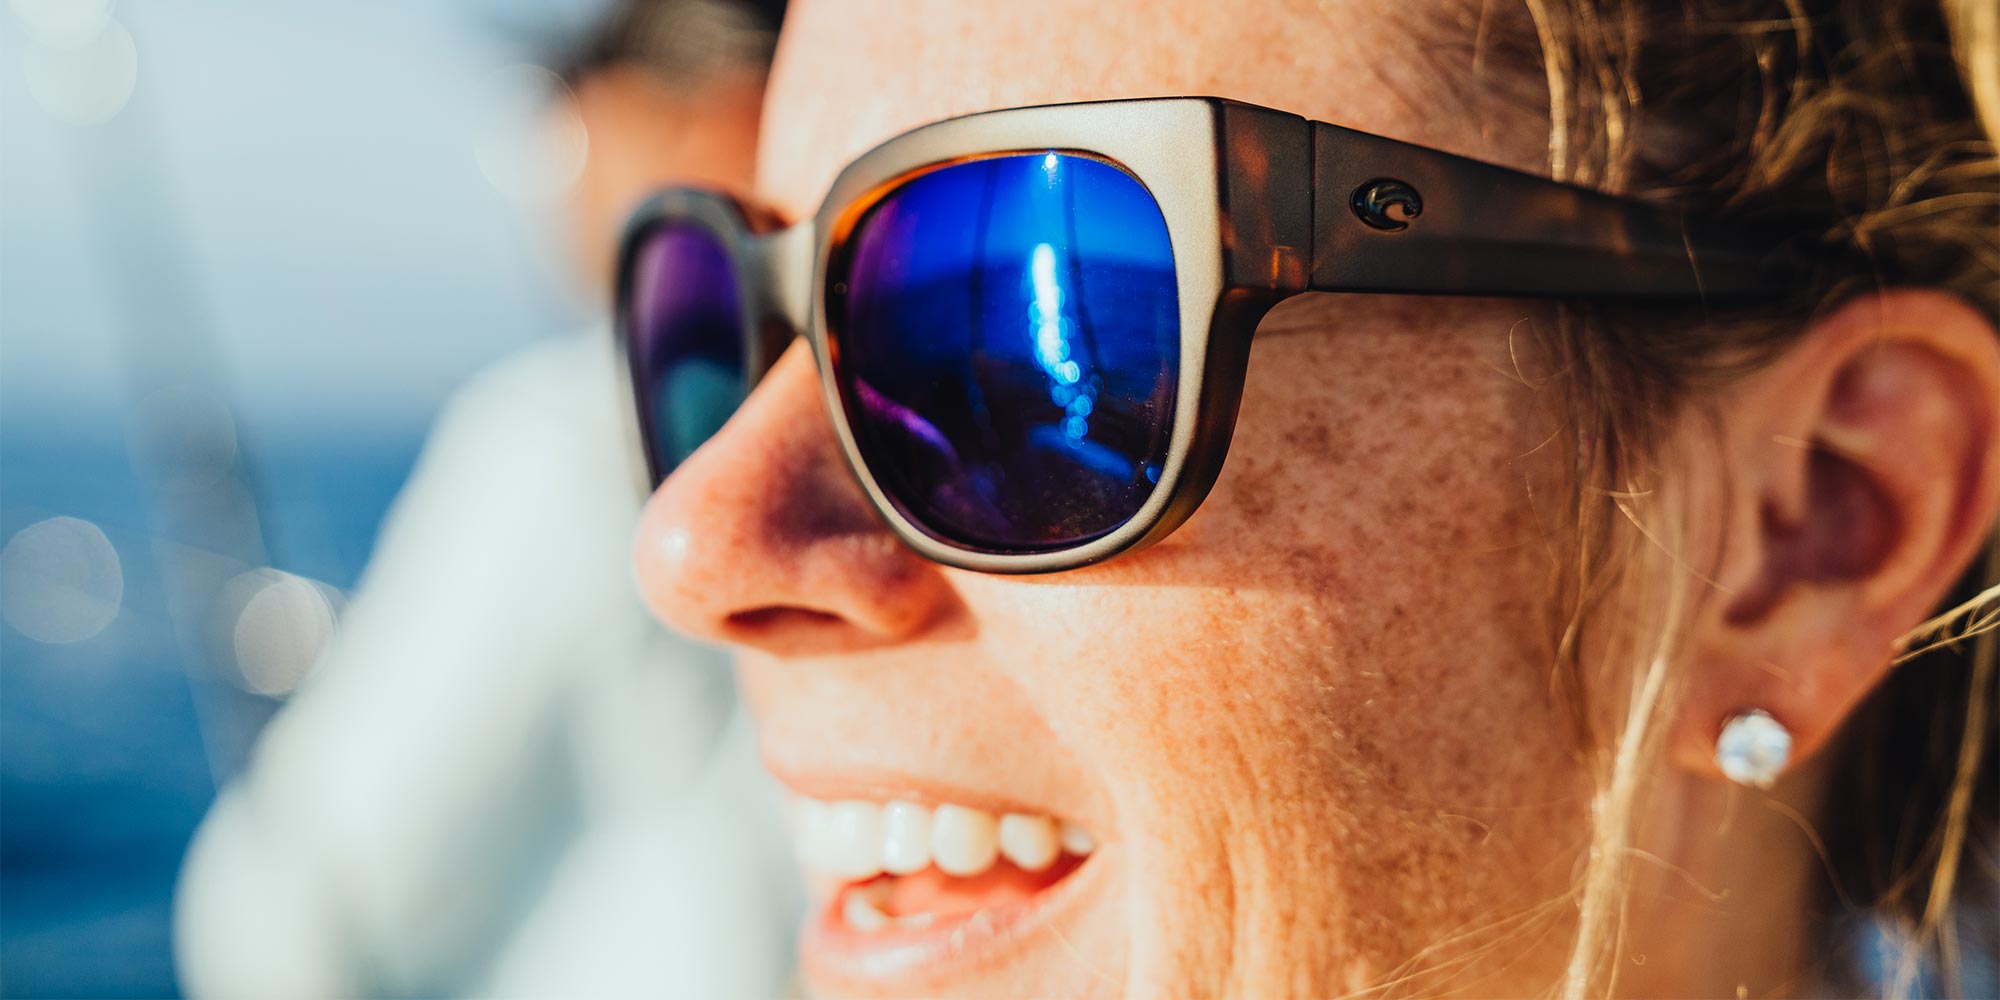 Waterwoman Polarized Sunglasses in Gray Silver Mirror | Costa Del Mar®